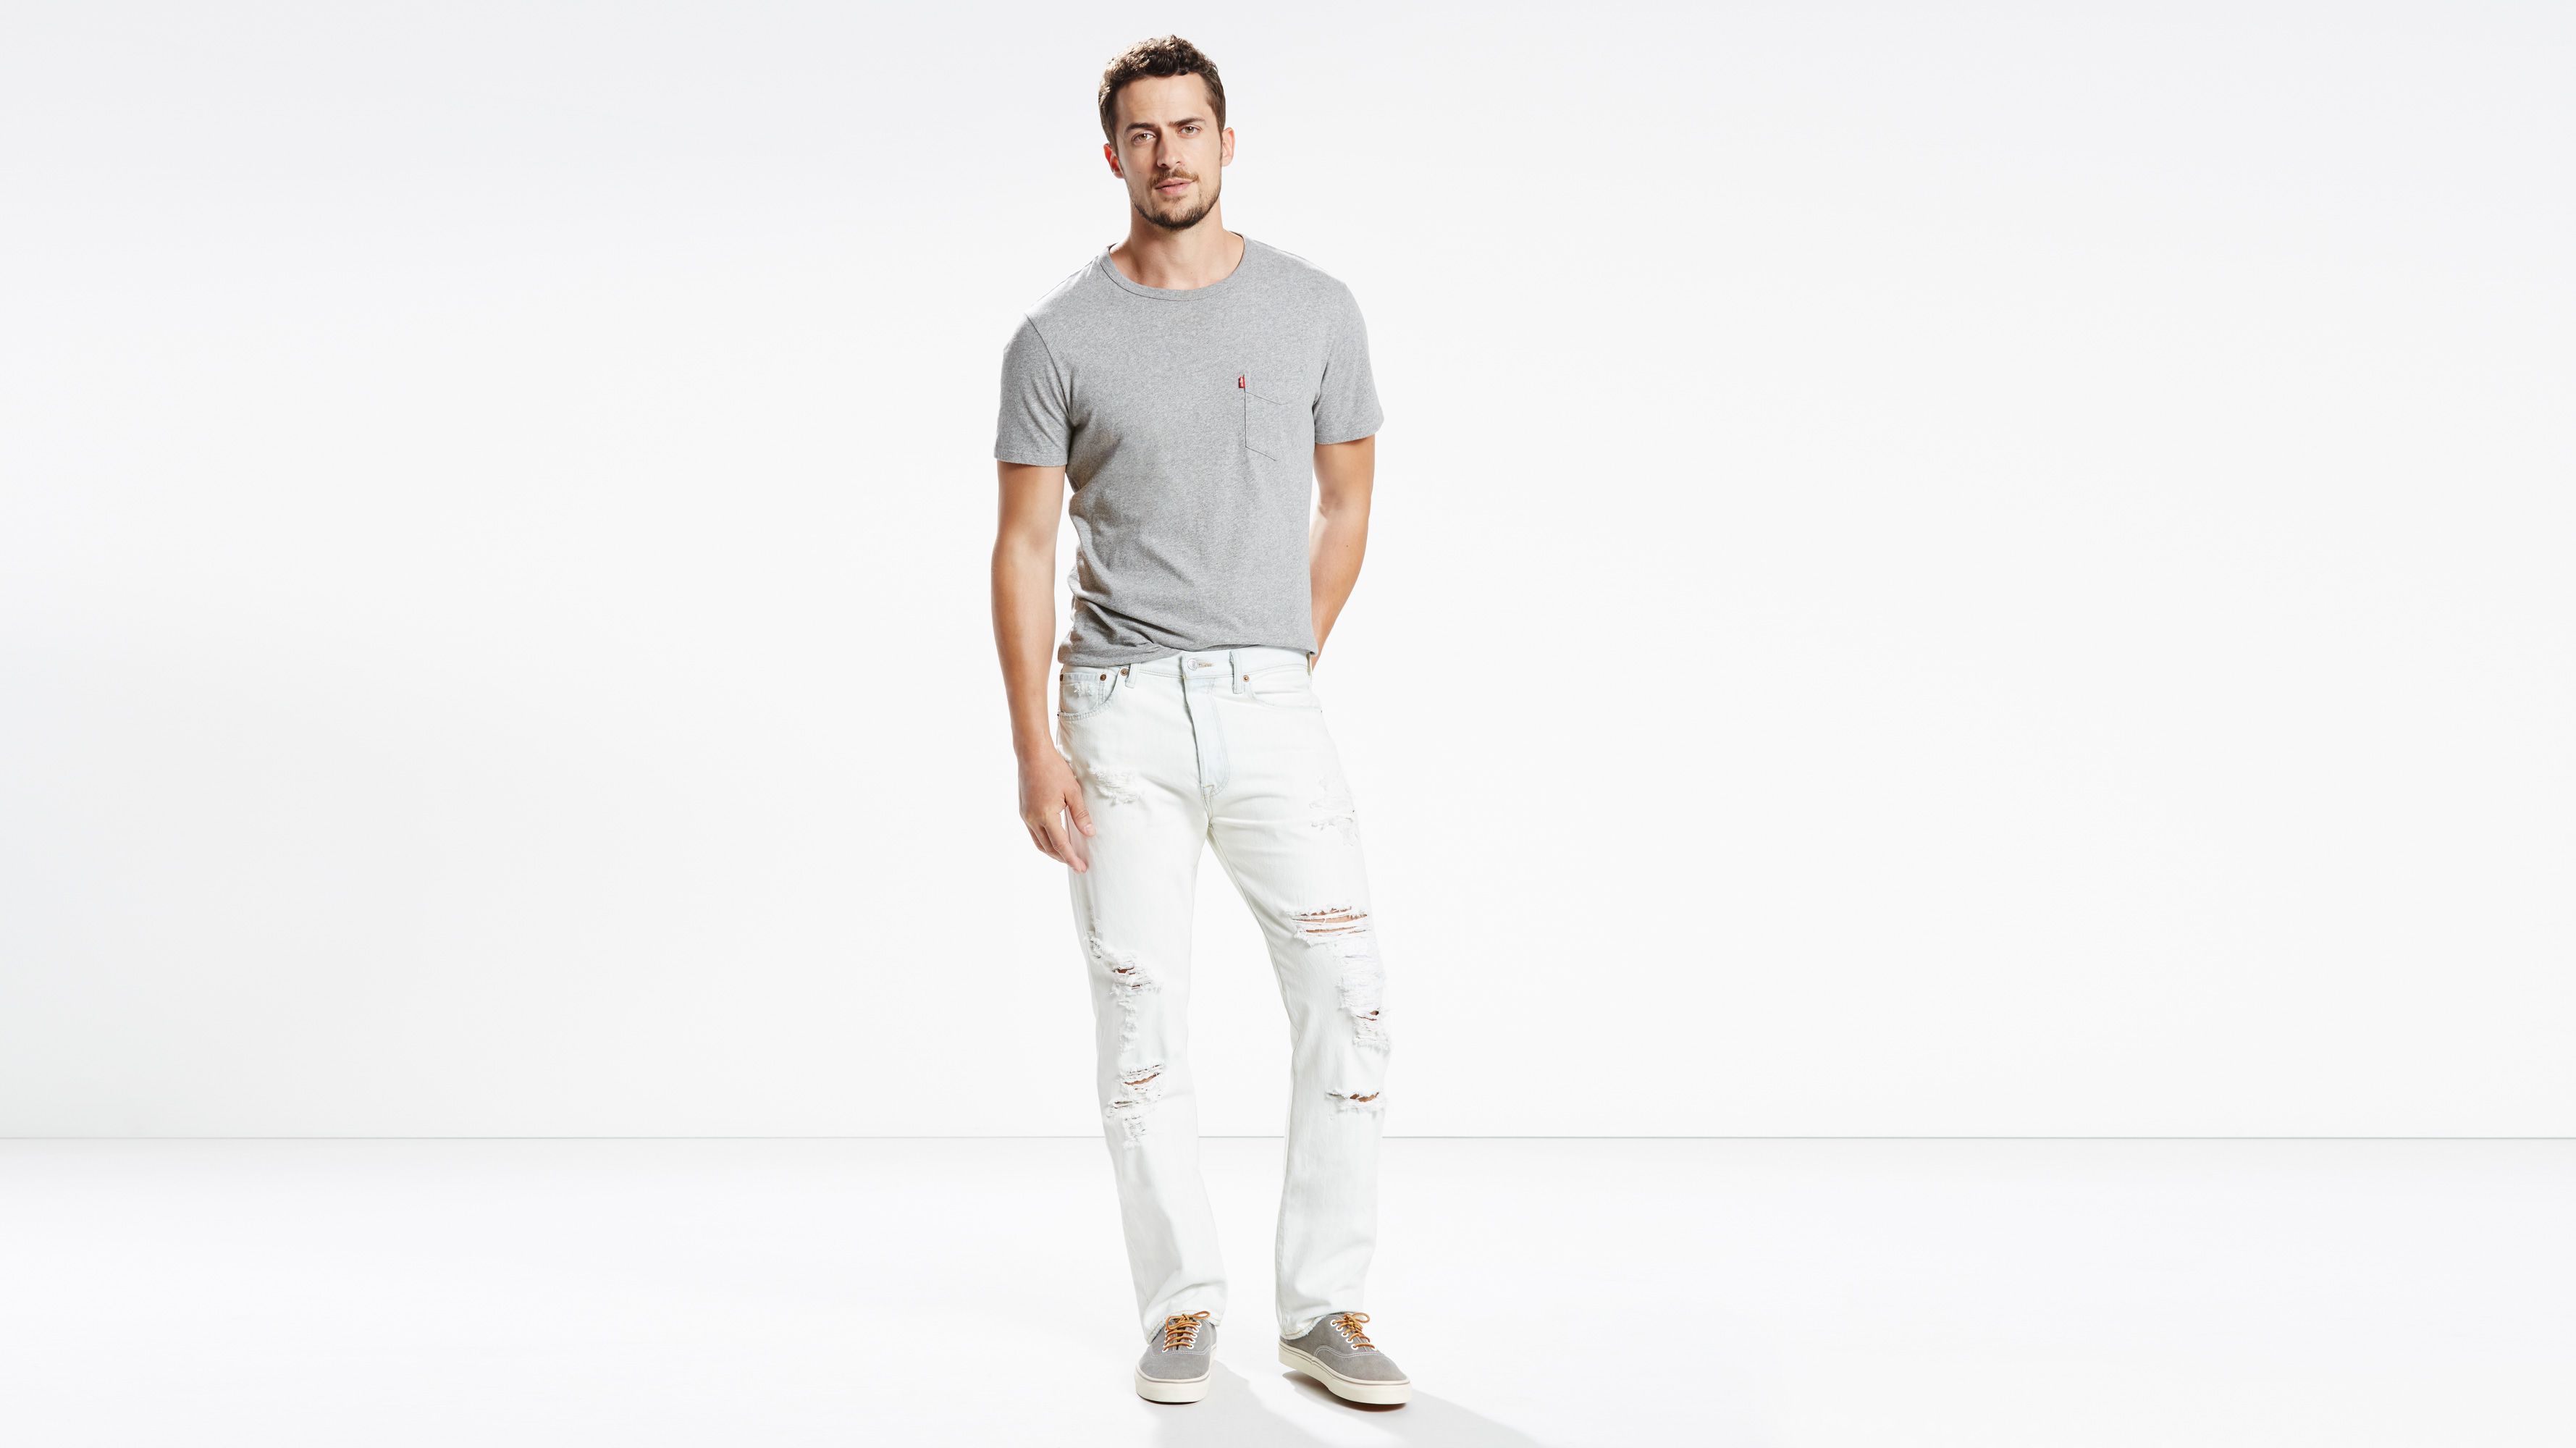 white levis 501 mens jeans